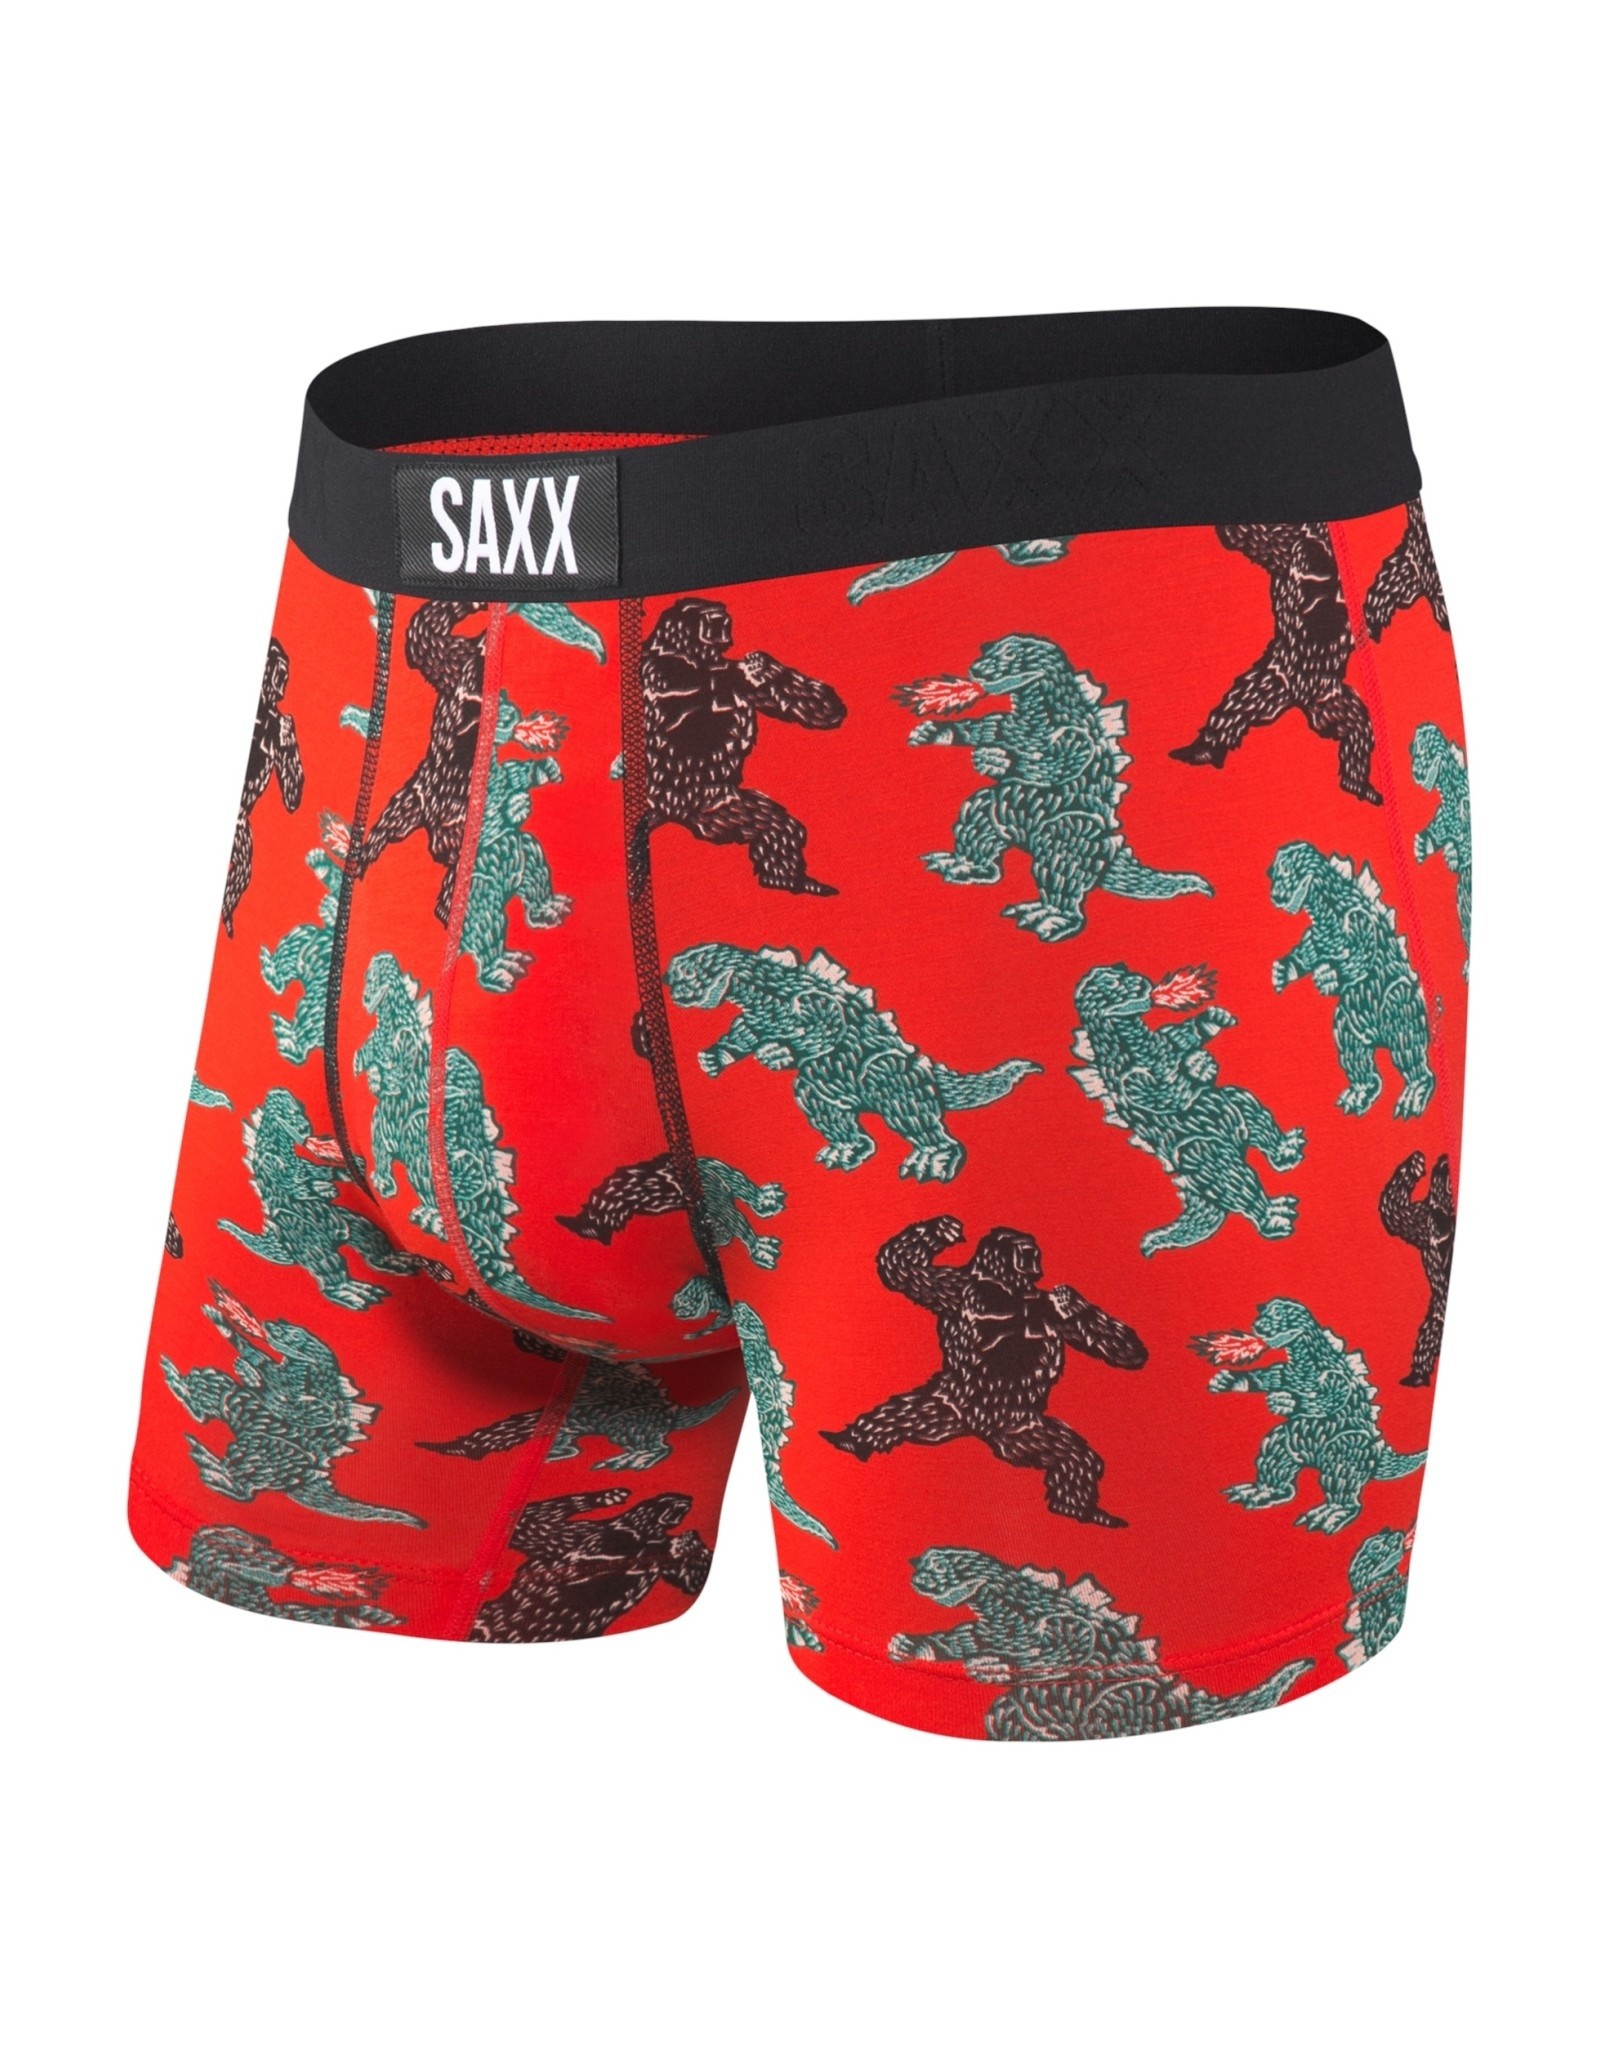 SAXX Men's Underwear – VIBE Super Soft Trunk Briefs with Built-In Pouch  Support, Underwear for Men